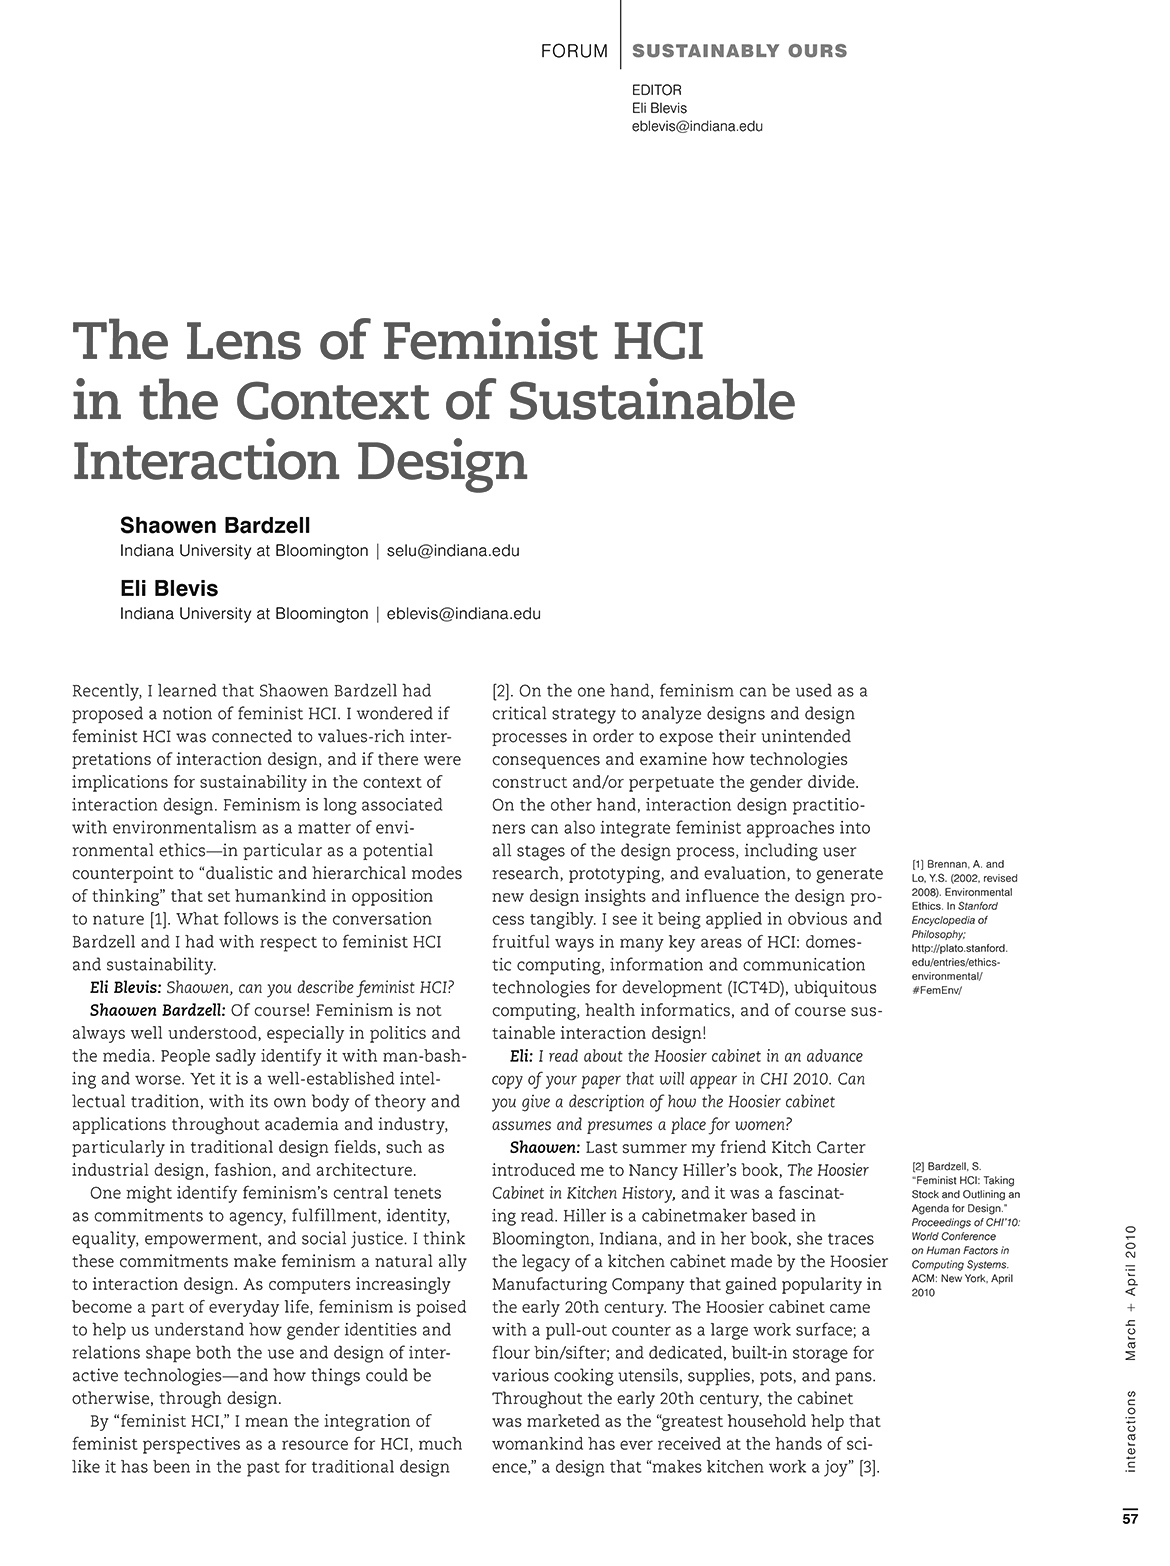 Sustainability and Feminist HCI